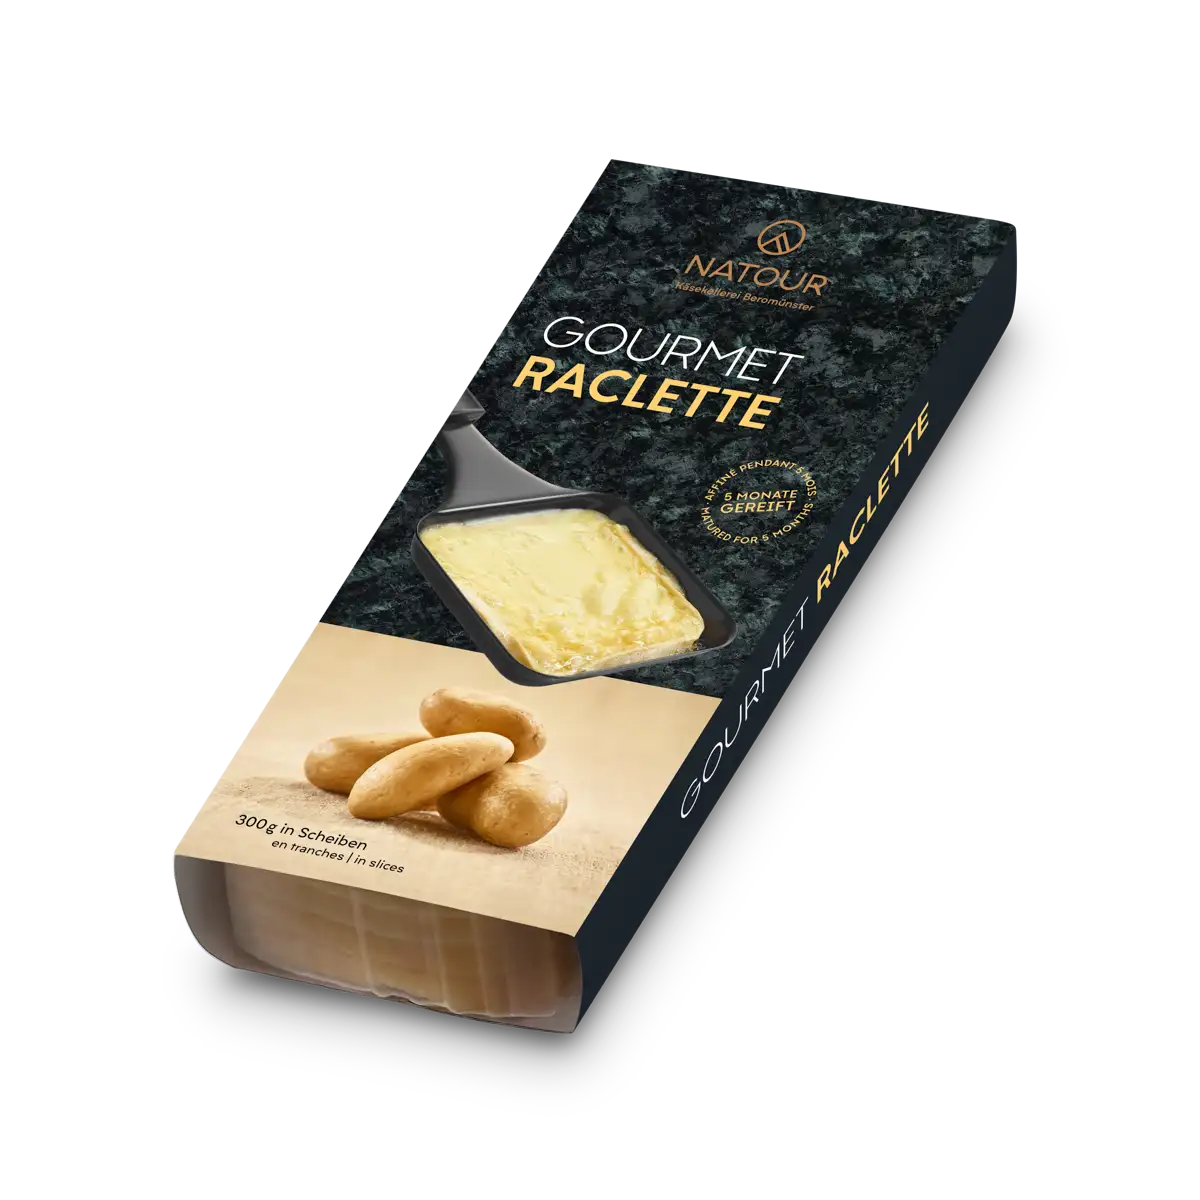 Raclette Gourmet